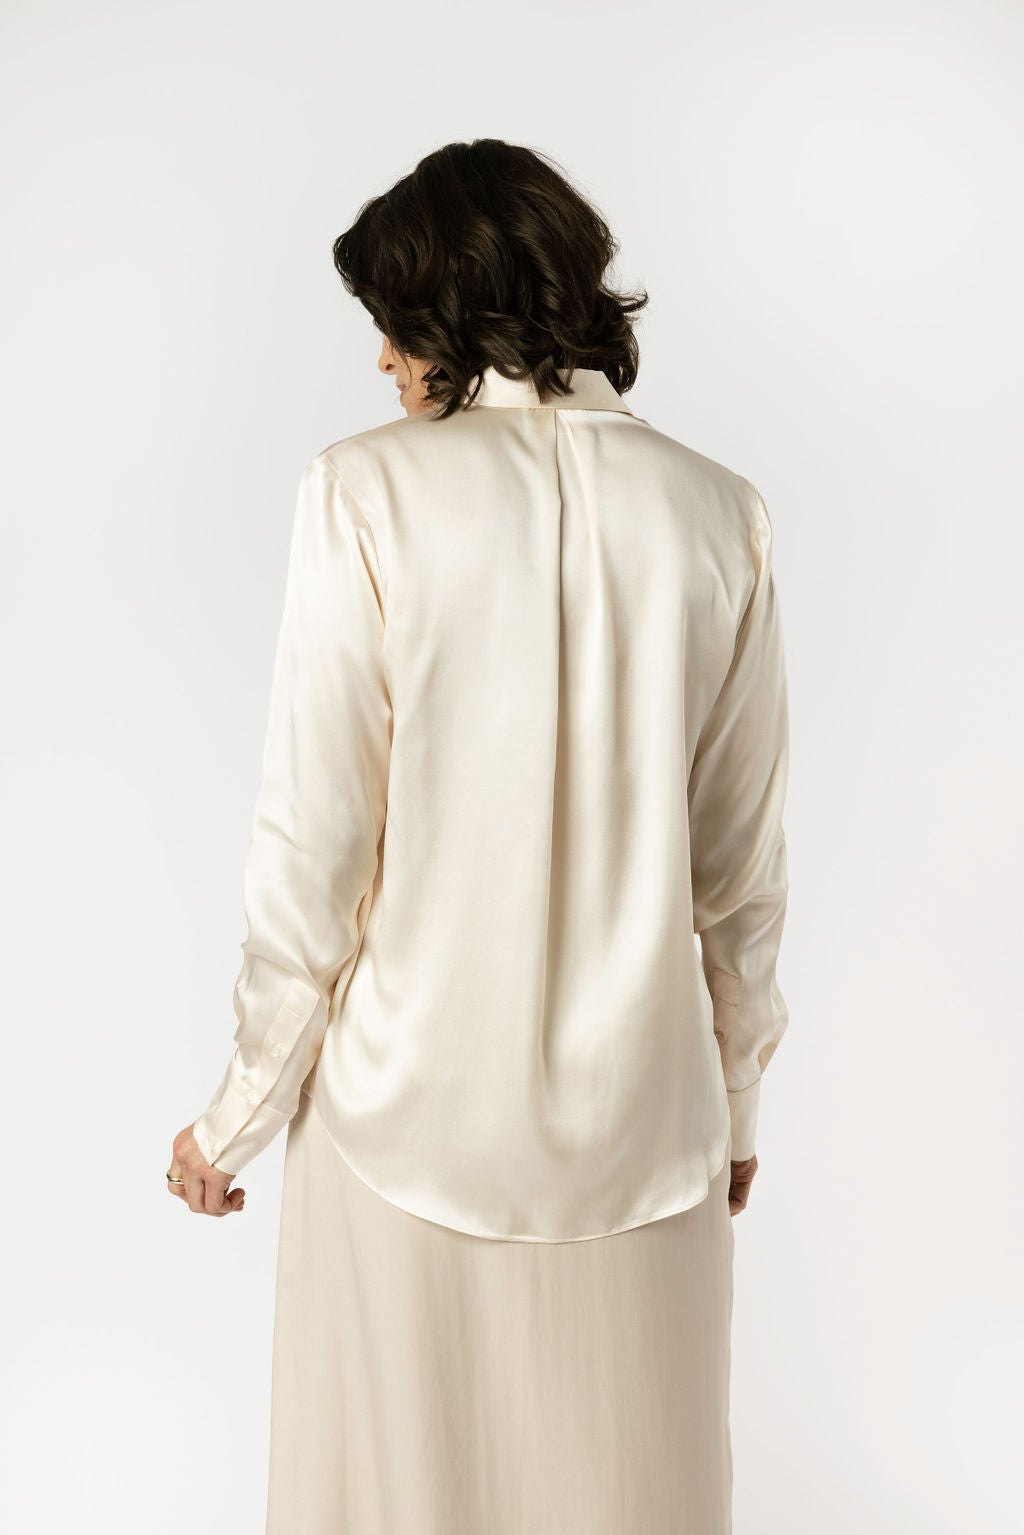 Minimalist Capsule Wardrobe Silk Cream Blouse Pleated Back